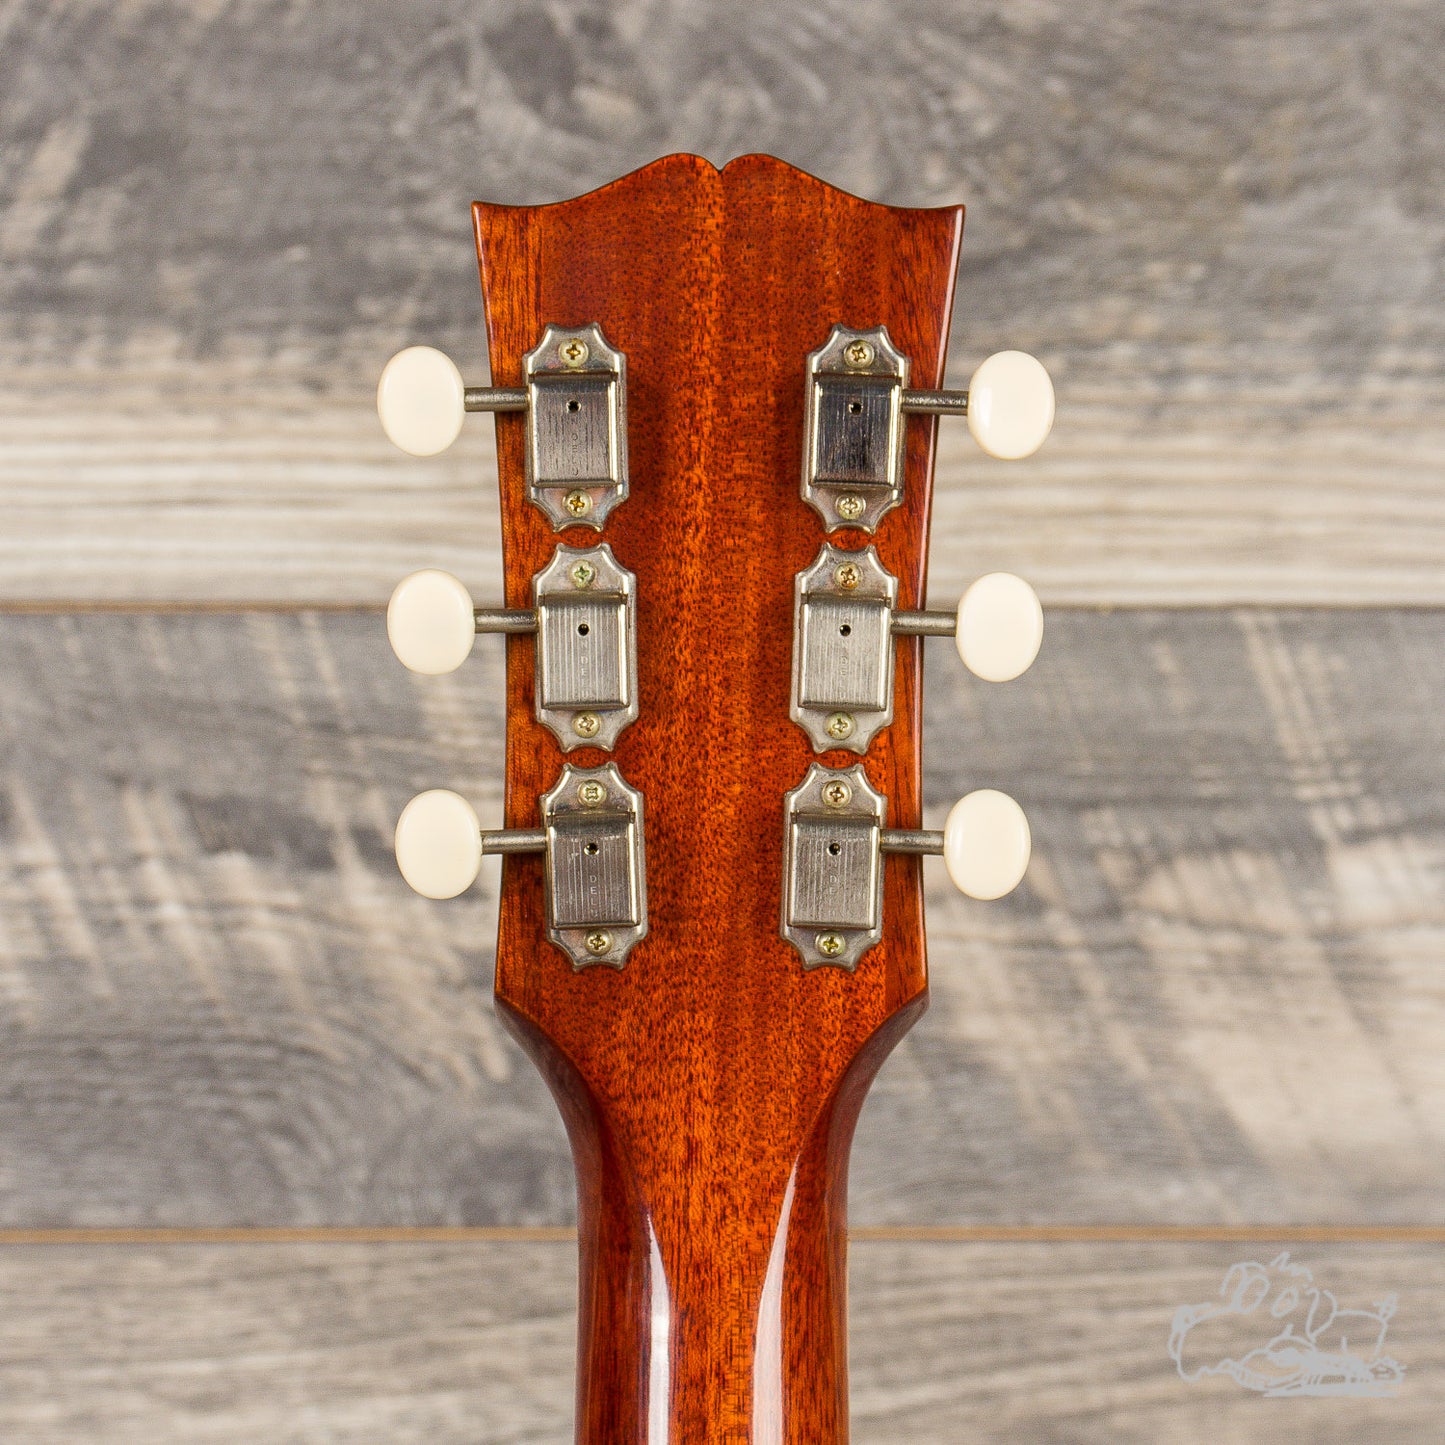 2015 Gibson Wildwood Spec ES-330